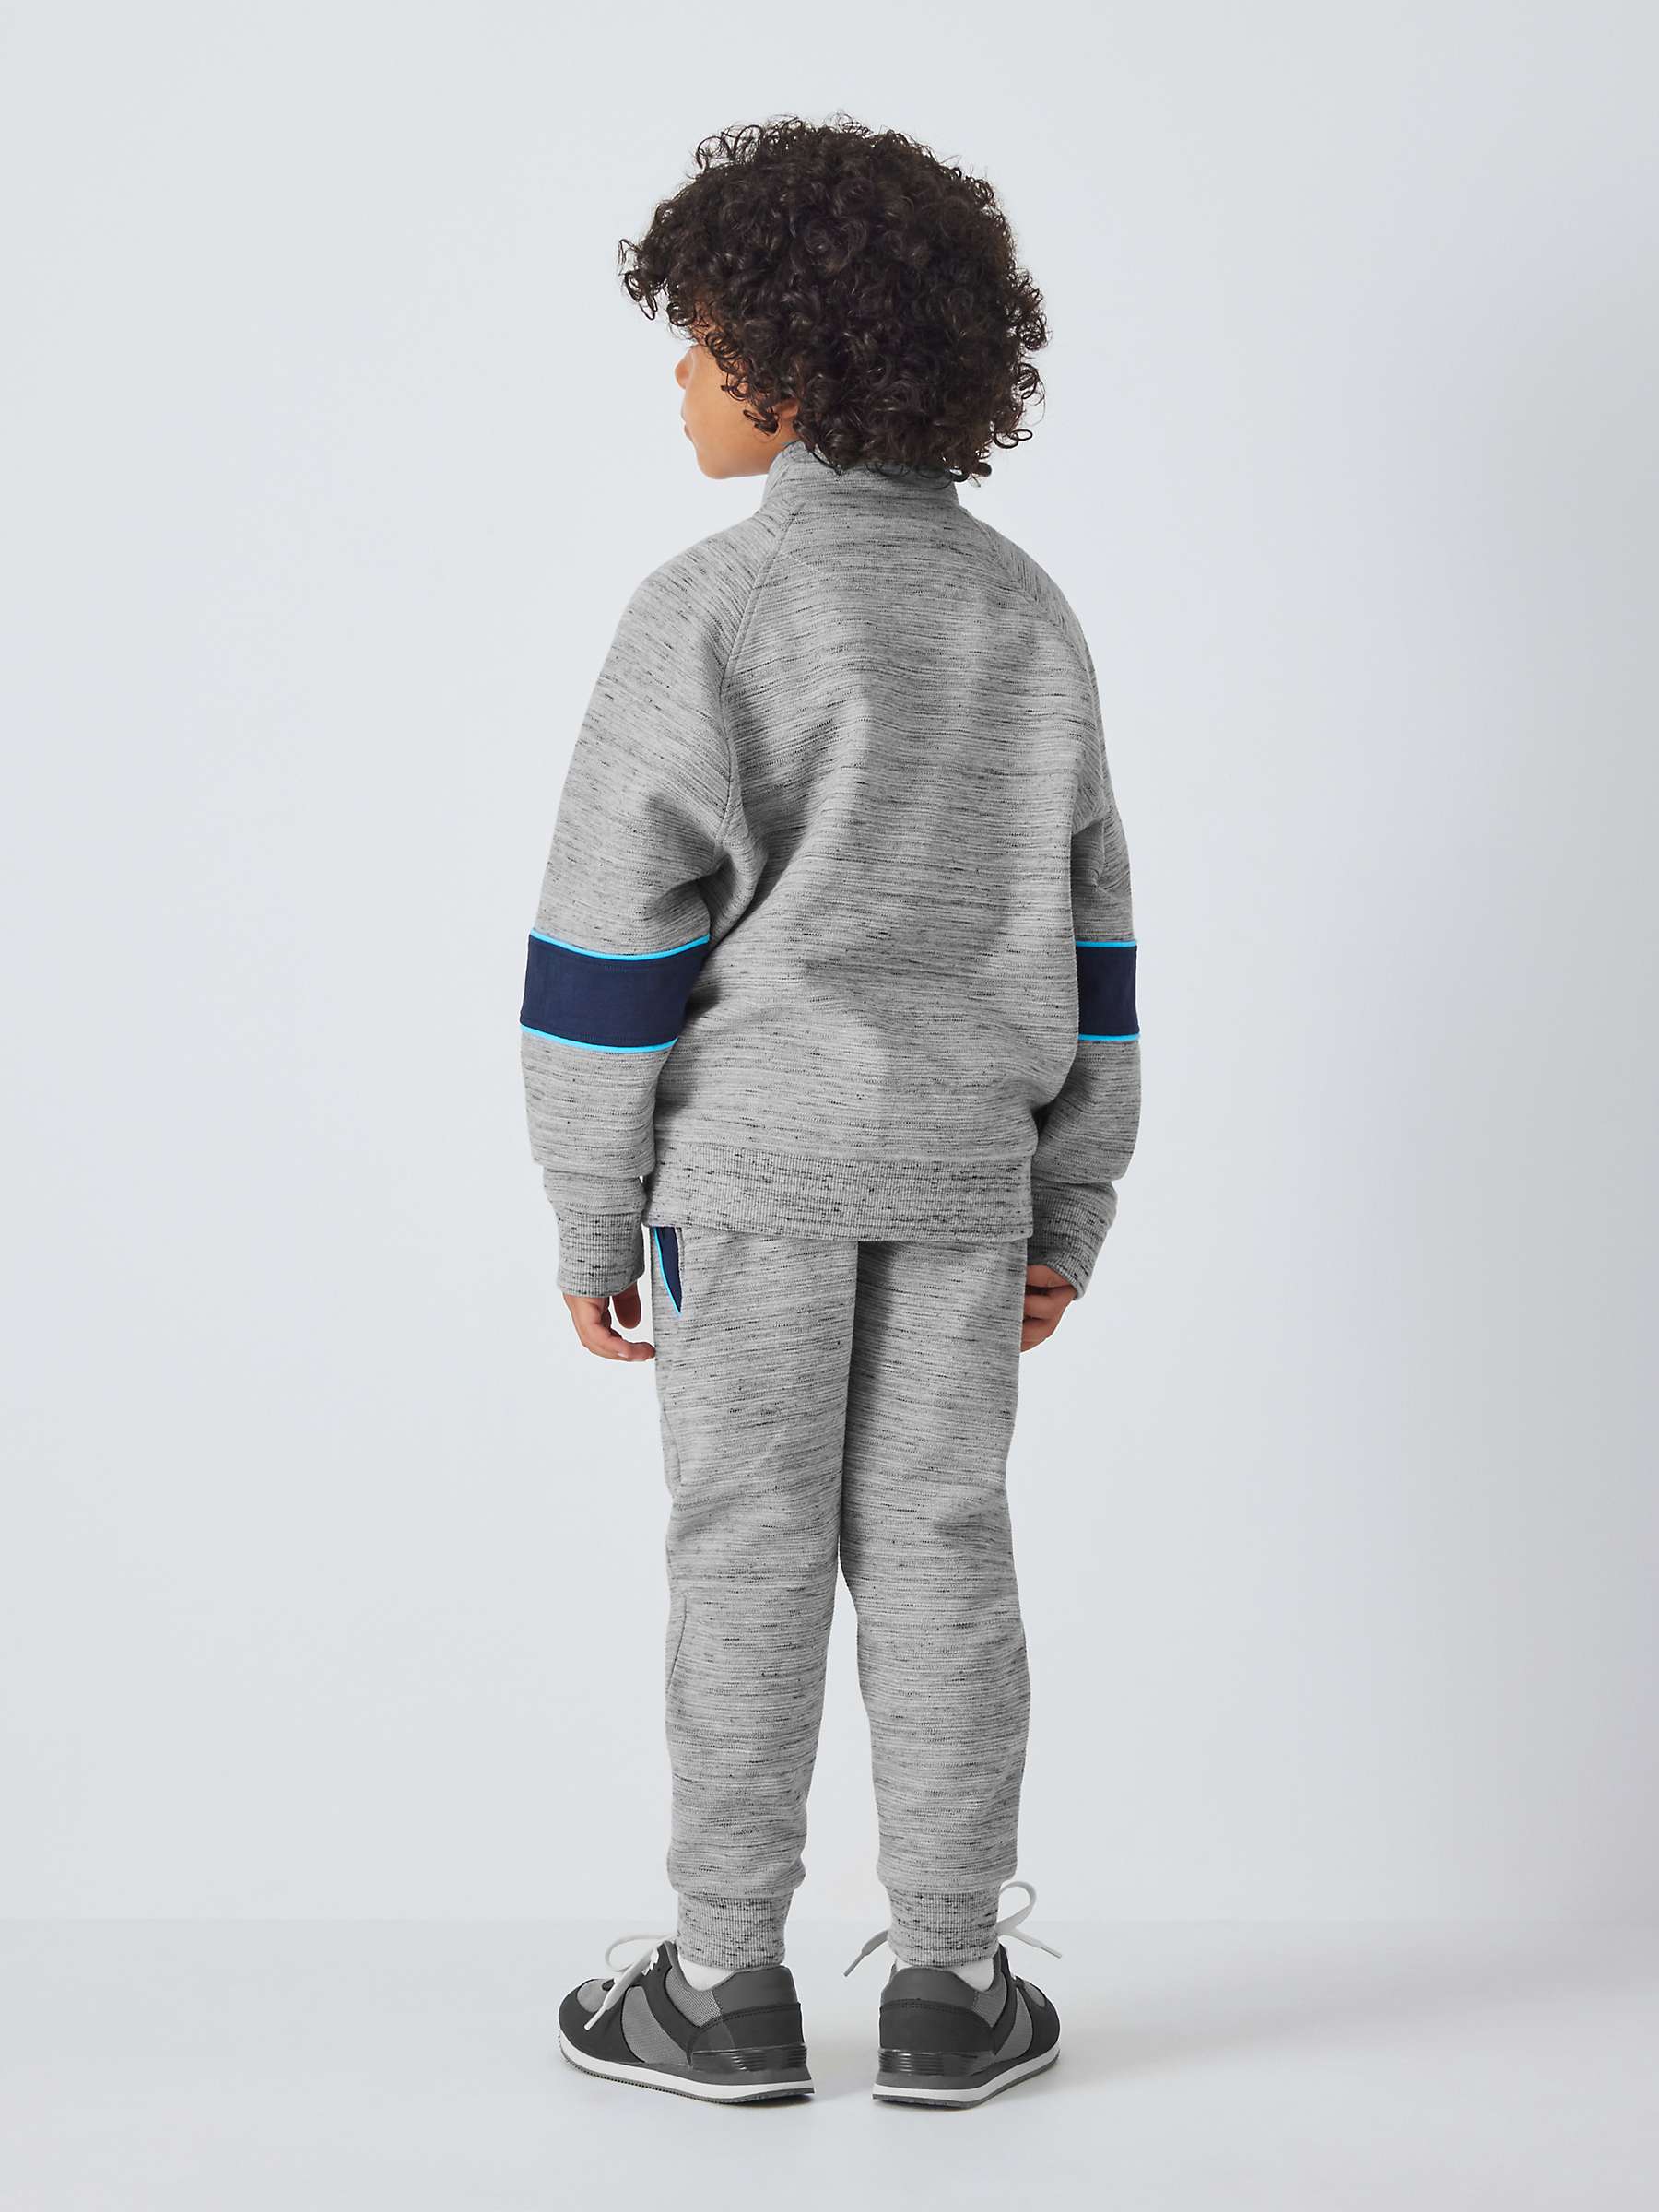 John Lewis Kids' Spacedye Sweater, Grey at John Lewis & Partners